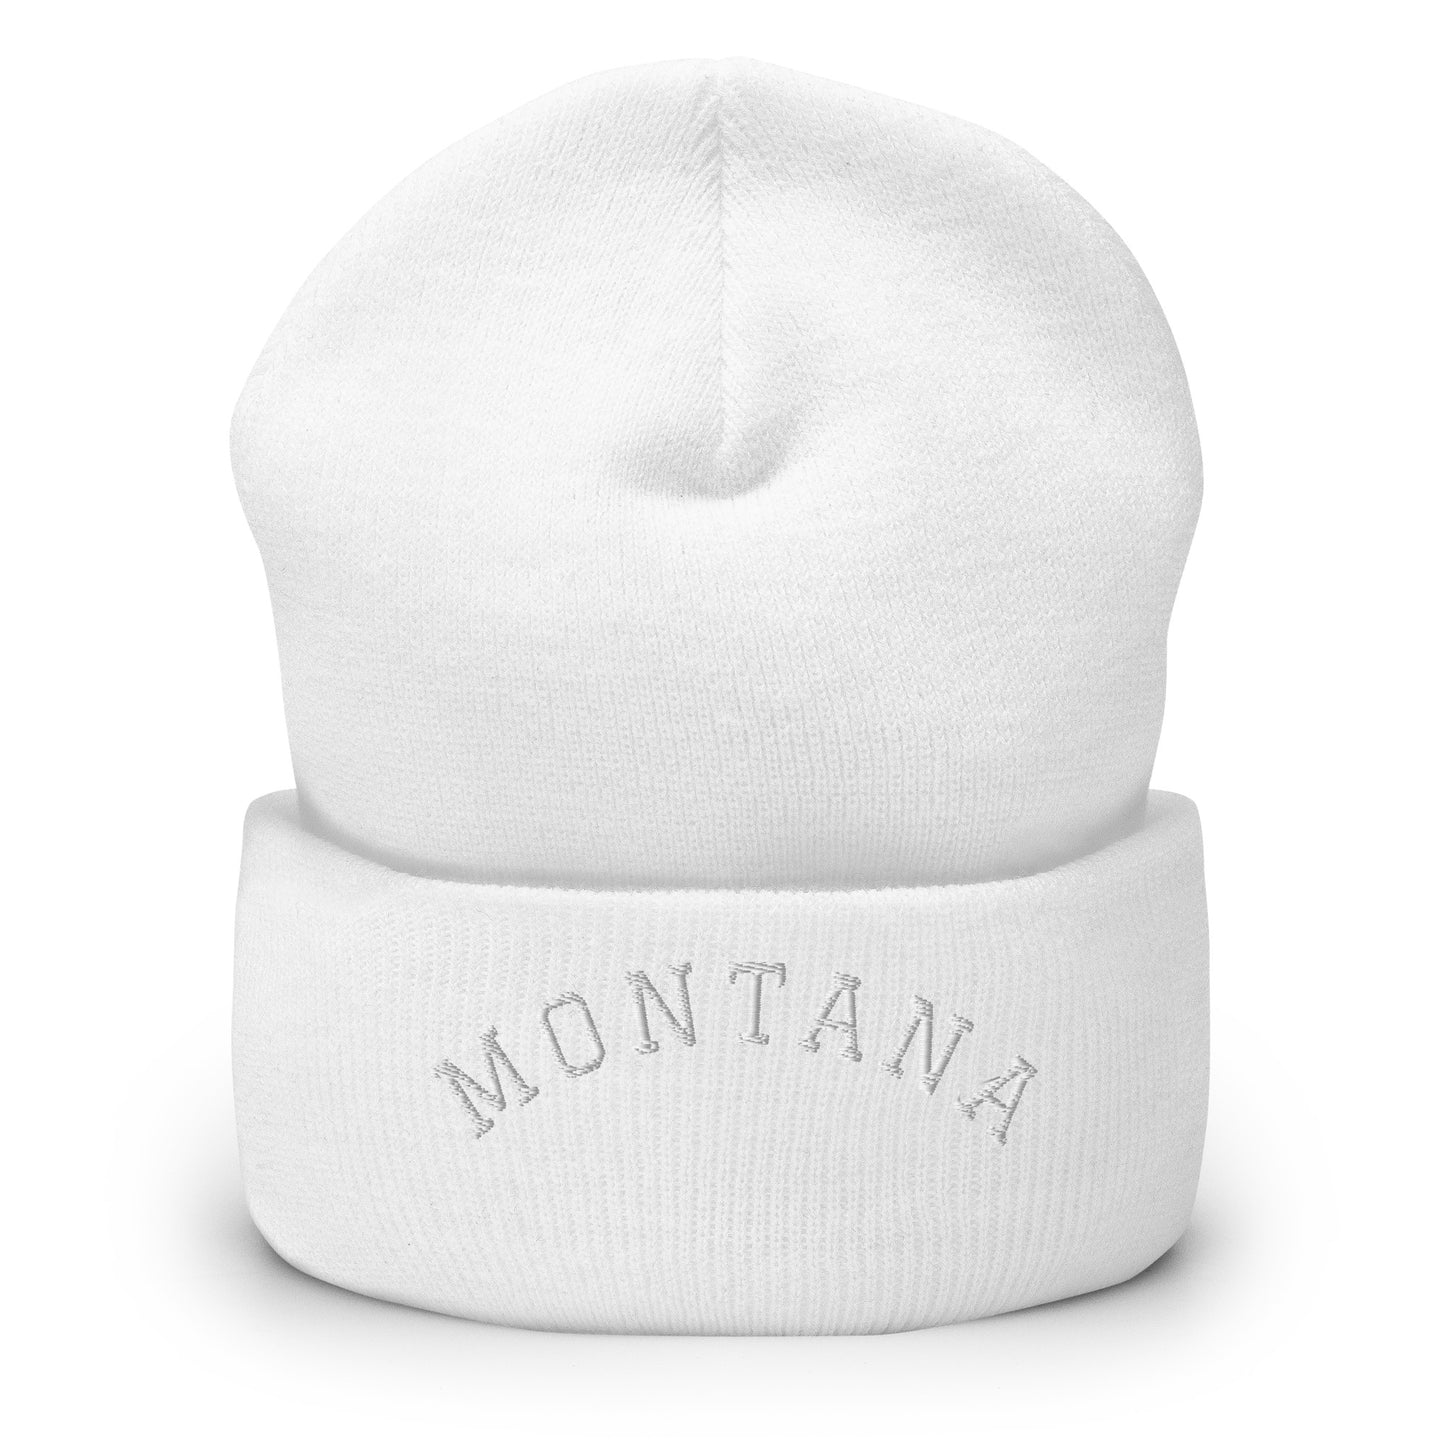 Montana Arch Cuffed Beanie Hat